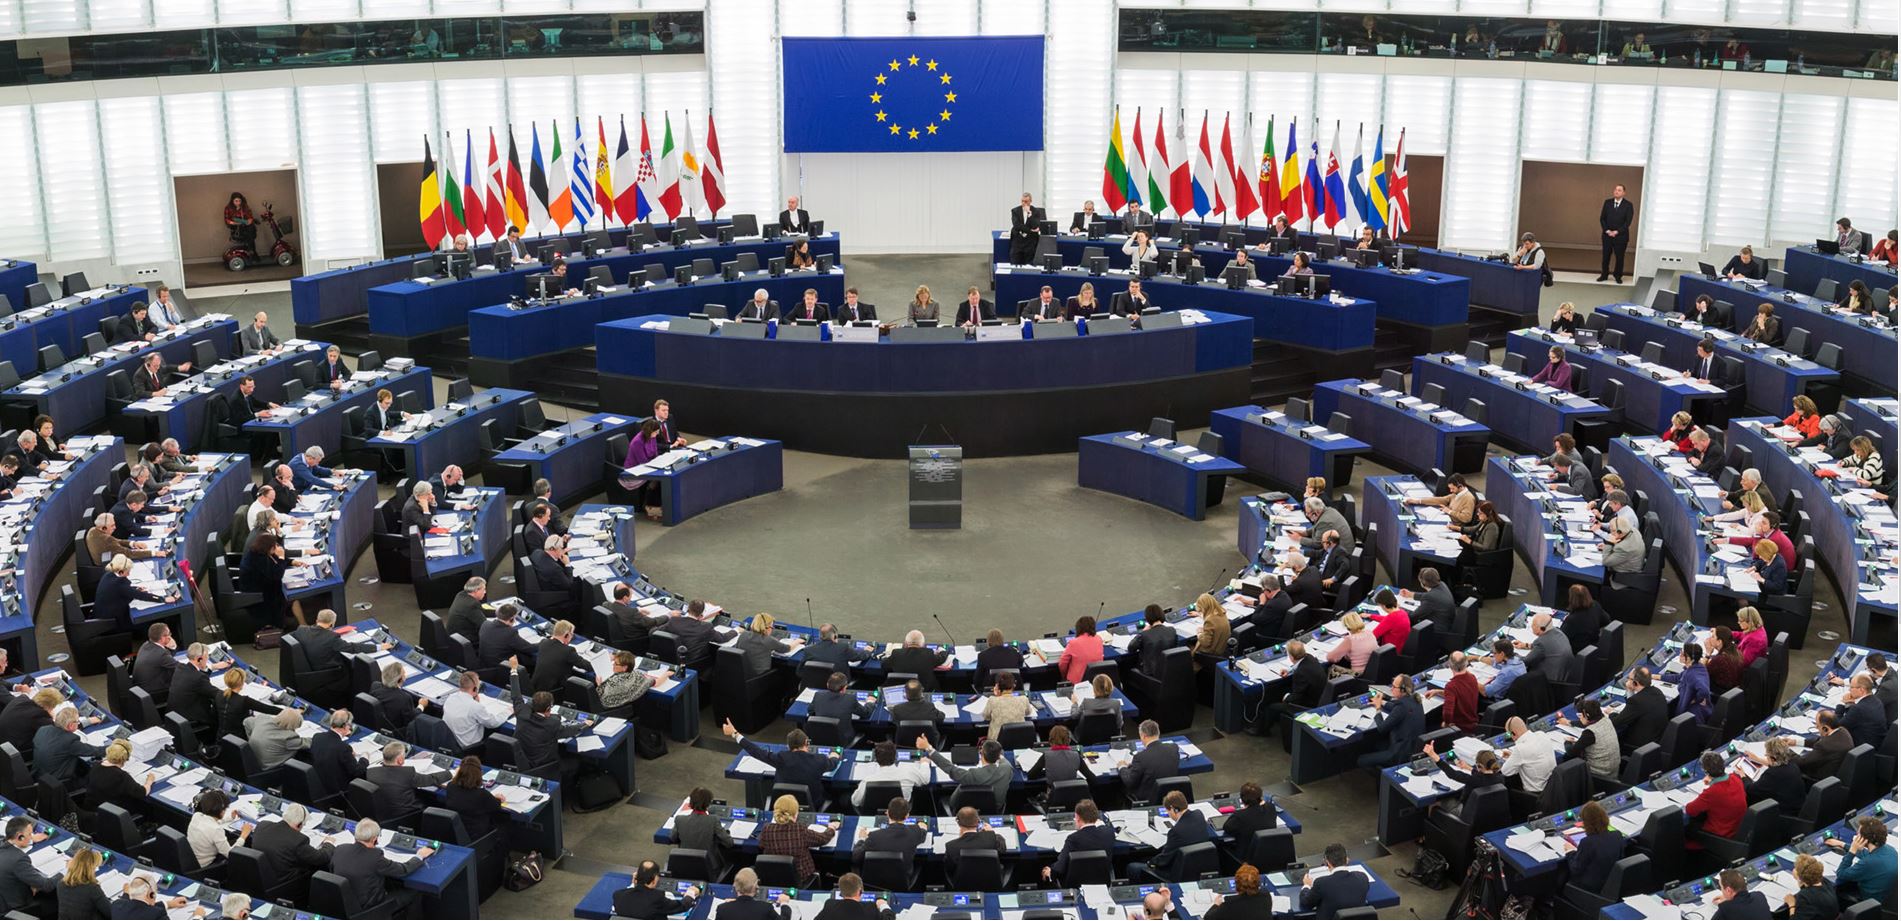 ΕΕ: Αν αποτύχει το σύμφωνο μετανάστευσης και ασύλου, «θα έχουμε αποτύχει όλοι» - Δραματική έκκληση Επιτρόπου